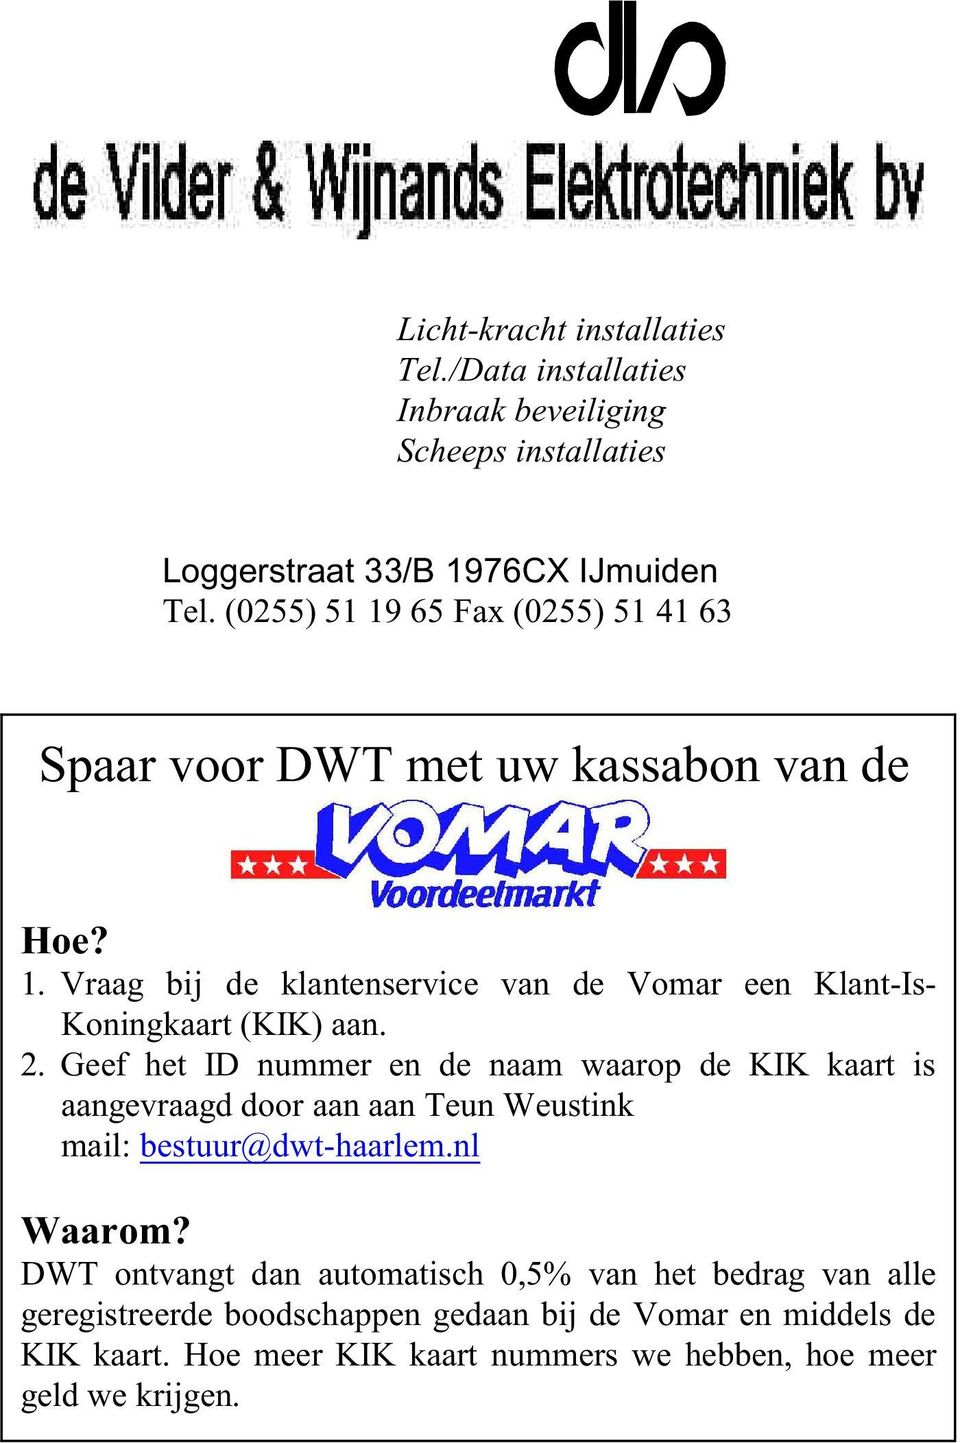 2. Geef het ID nummer en de naam waarop de KIK kaart is aangevraagd door aan aan Teun Weustink mail: bestuur@dwt-haarlem.nl Waarom?